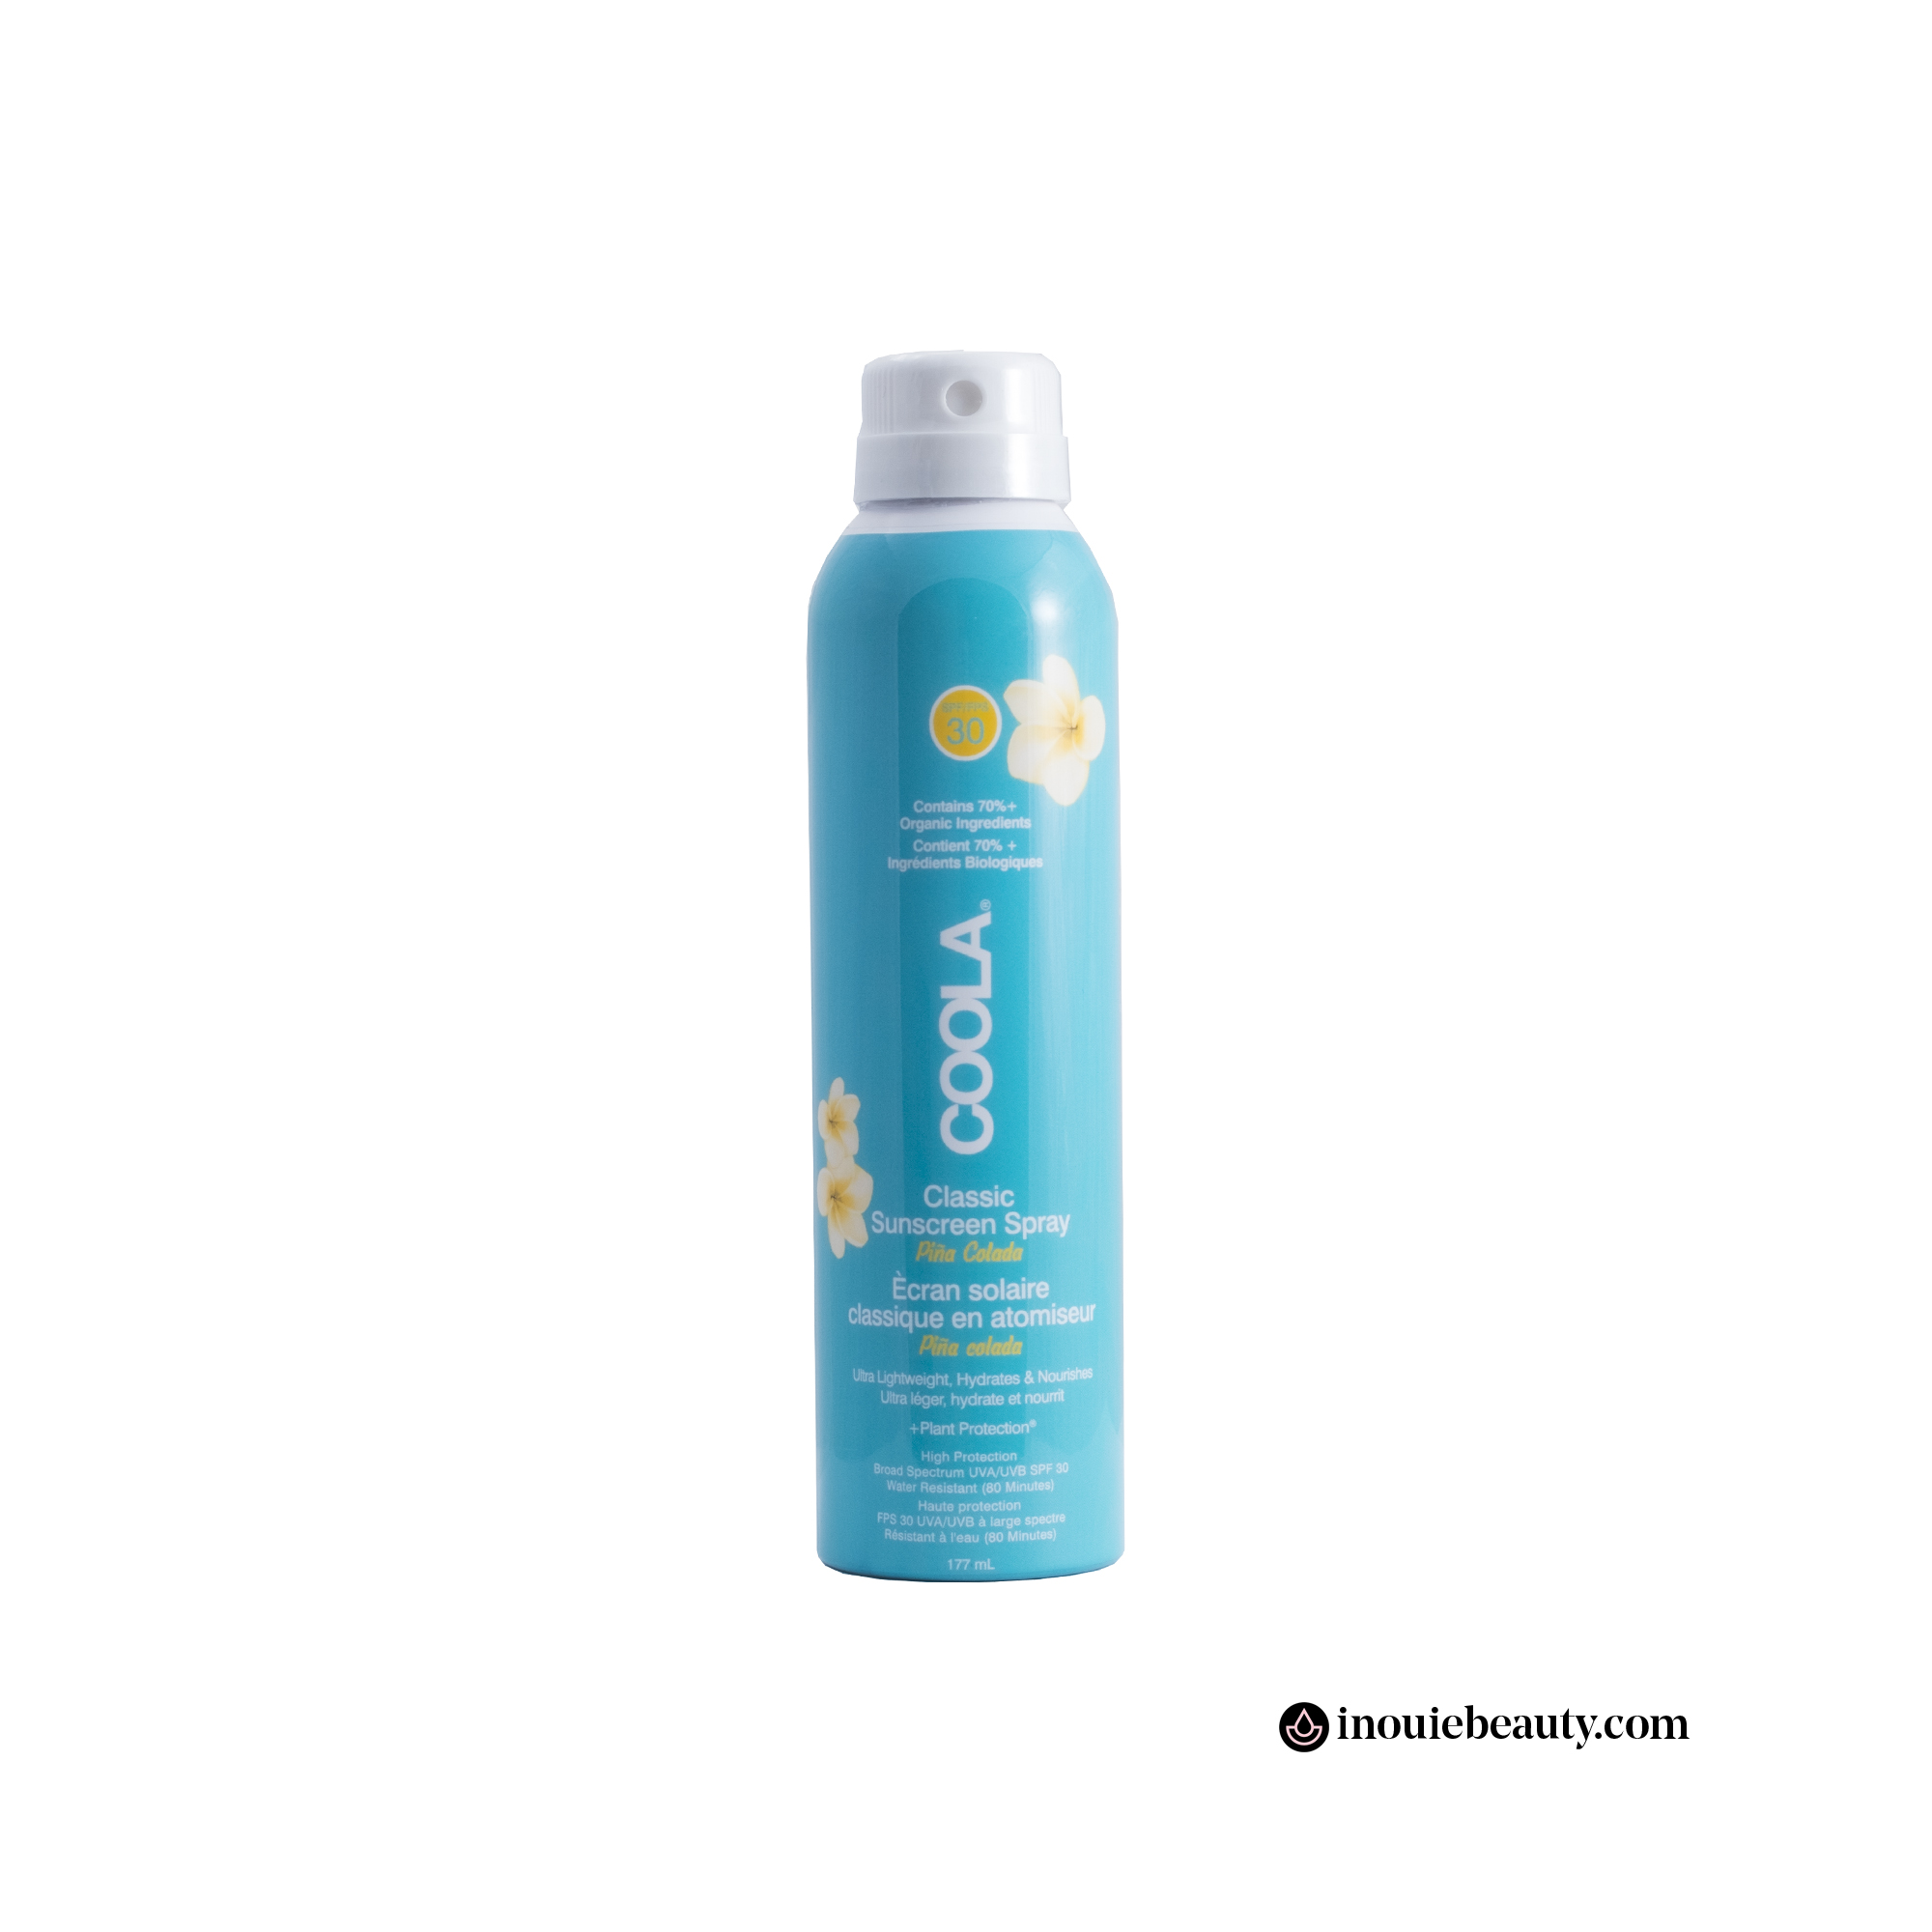 Coola Body Organic Sunscreen Spray SPF 30 - Piña Colada